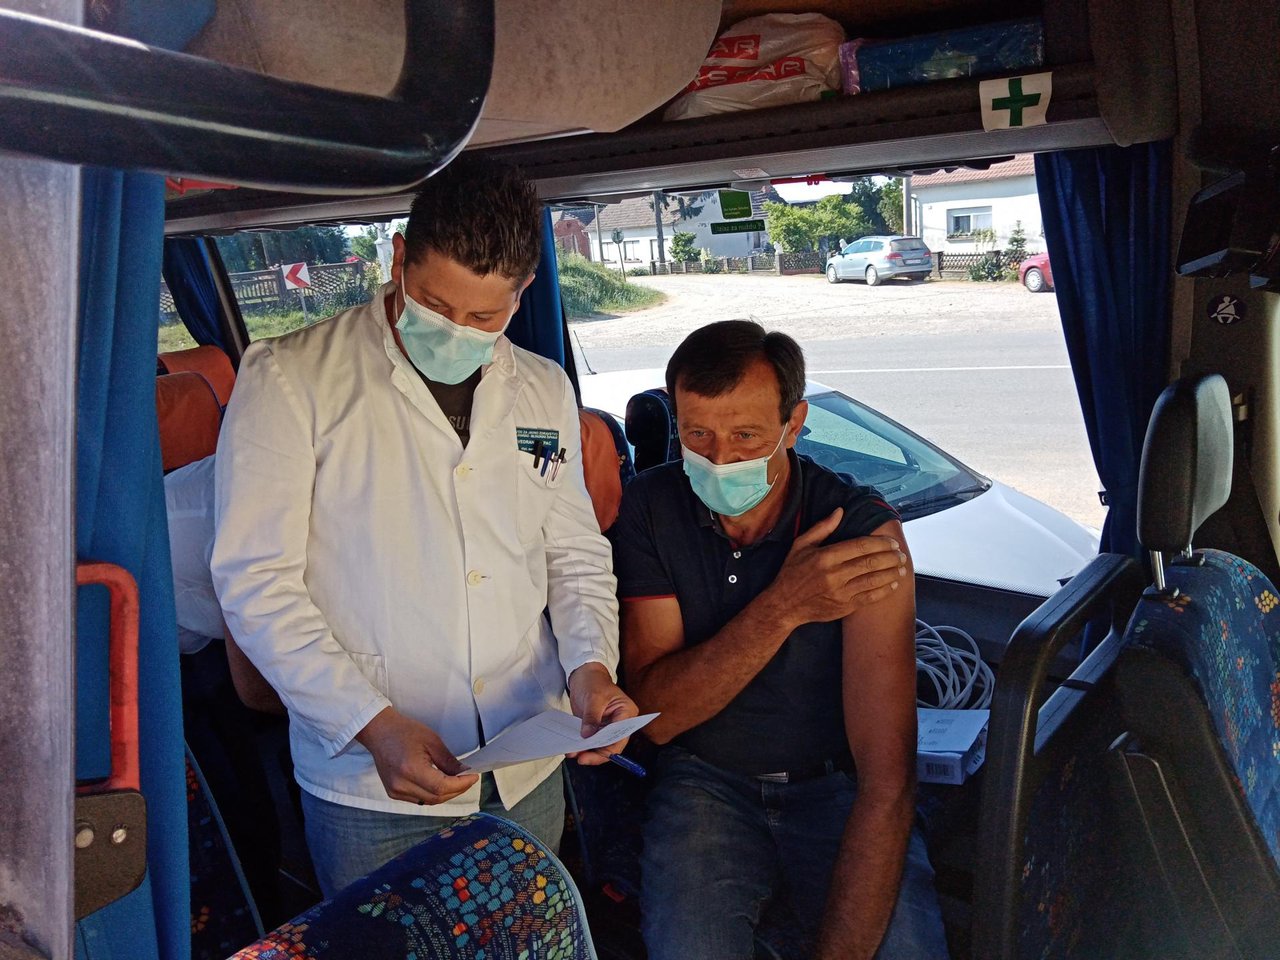 Fotografija: Počelo cijepljenje u COVID autobusu/ Foto: Deni Marčinković
